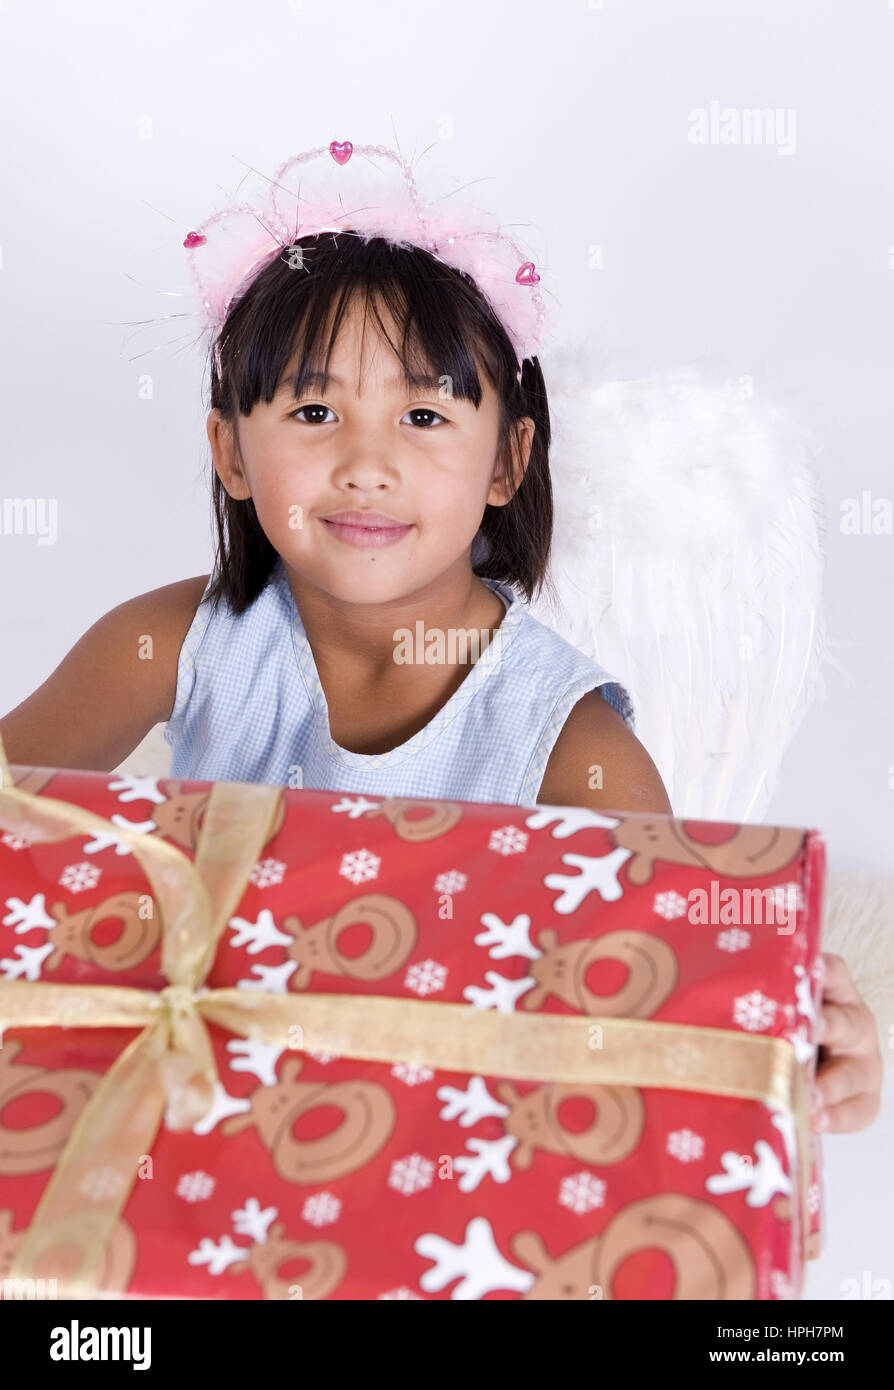 Asiatisches Maedchen mit Weihnachtsgeschenk - girl with christmas present, Model released Stock Photo